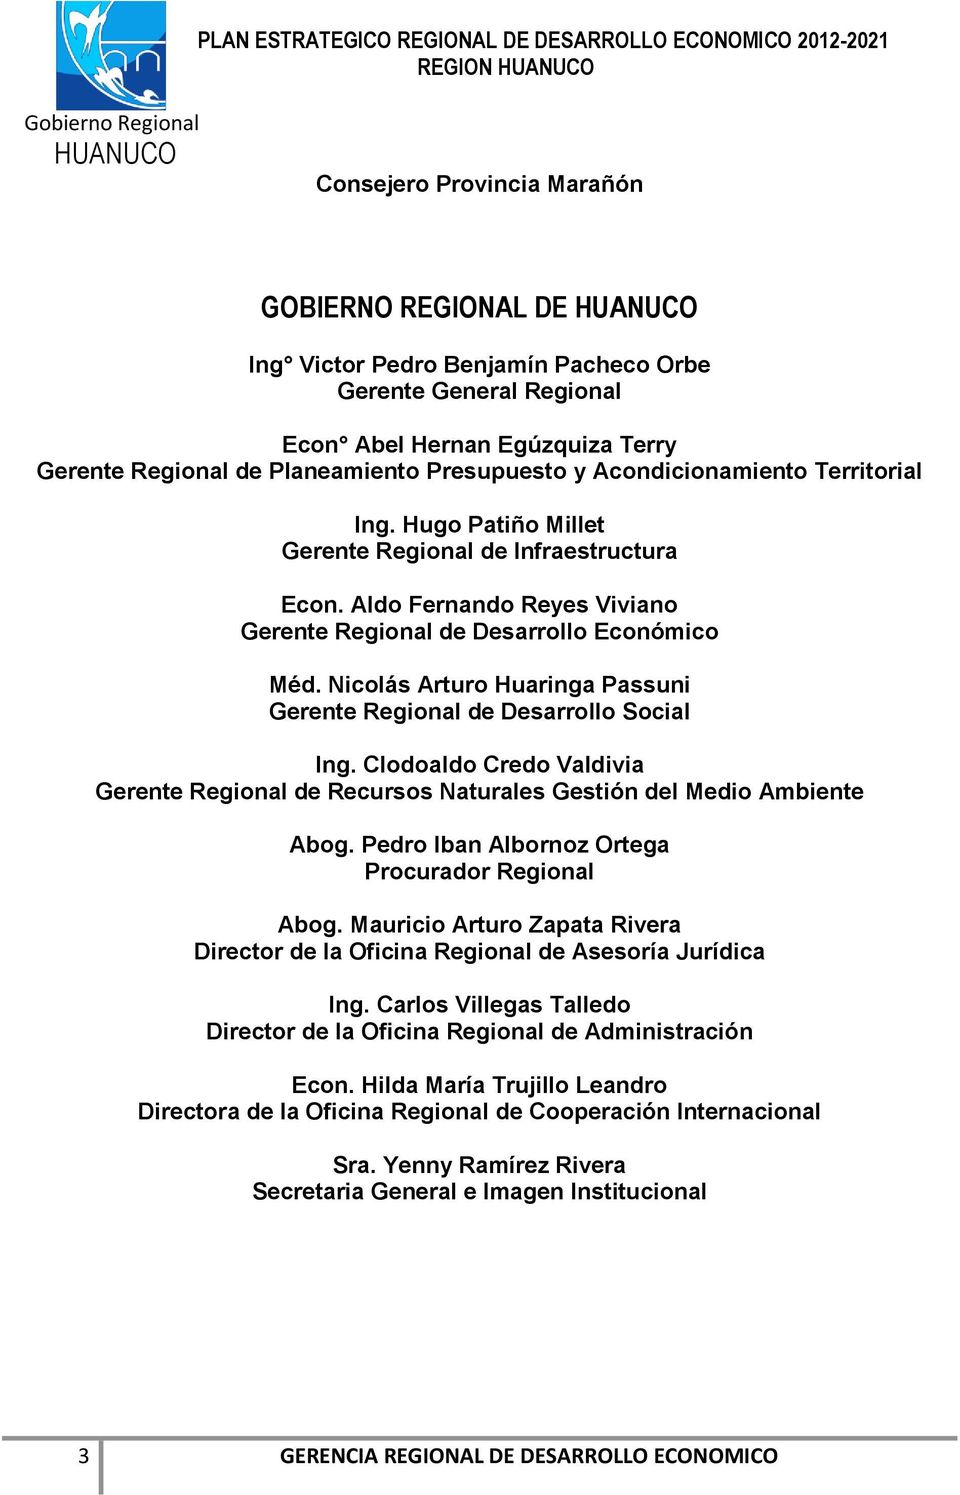 Nicolás Arturo Huaringa Passuni Gerente Regional Desarrollo Social Ing. Clodoaldo Credo Valdivia Gerente Regional Recursos Naturales Gestión l Medio Ambiente Abog.